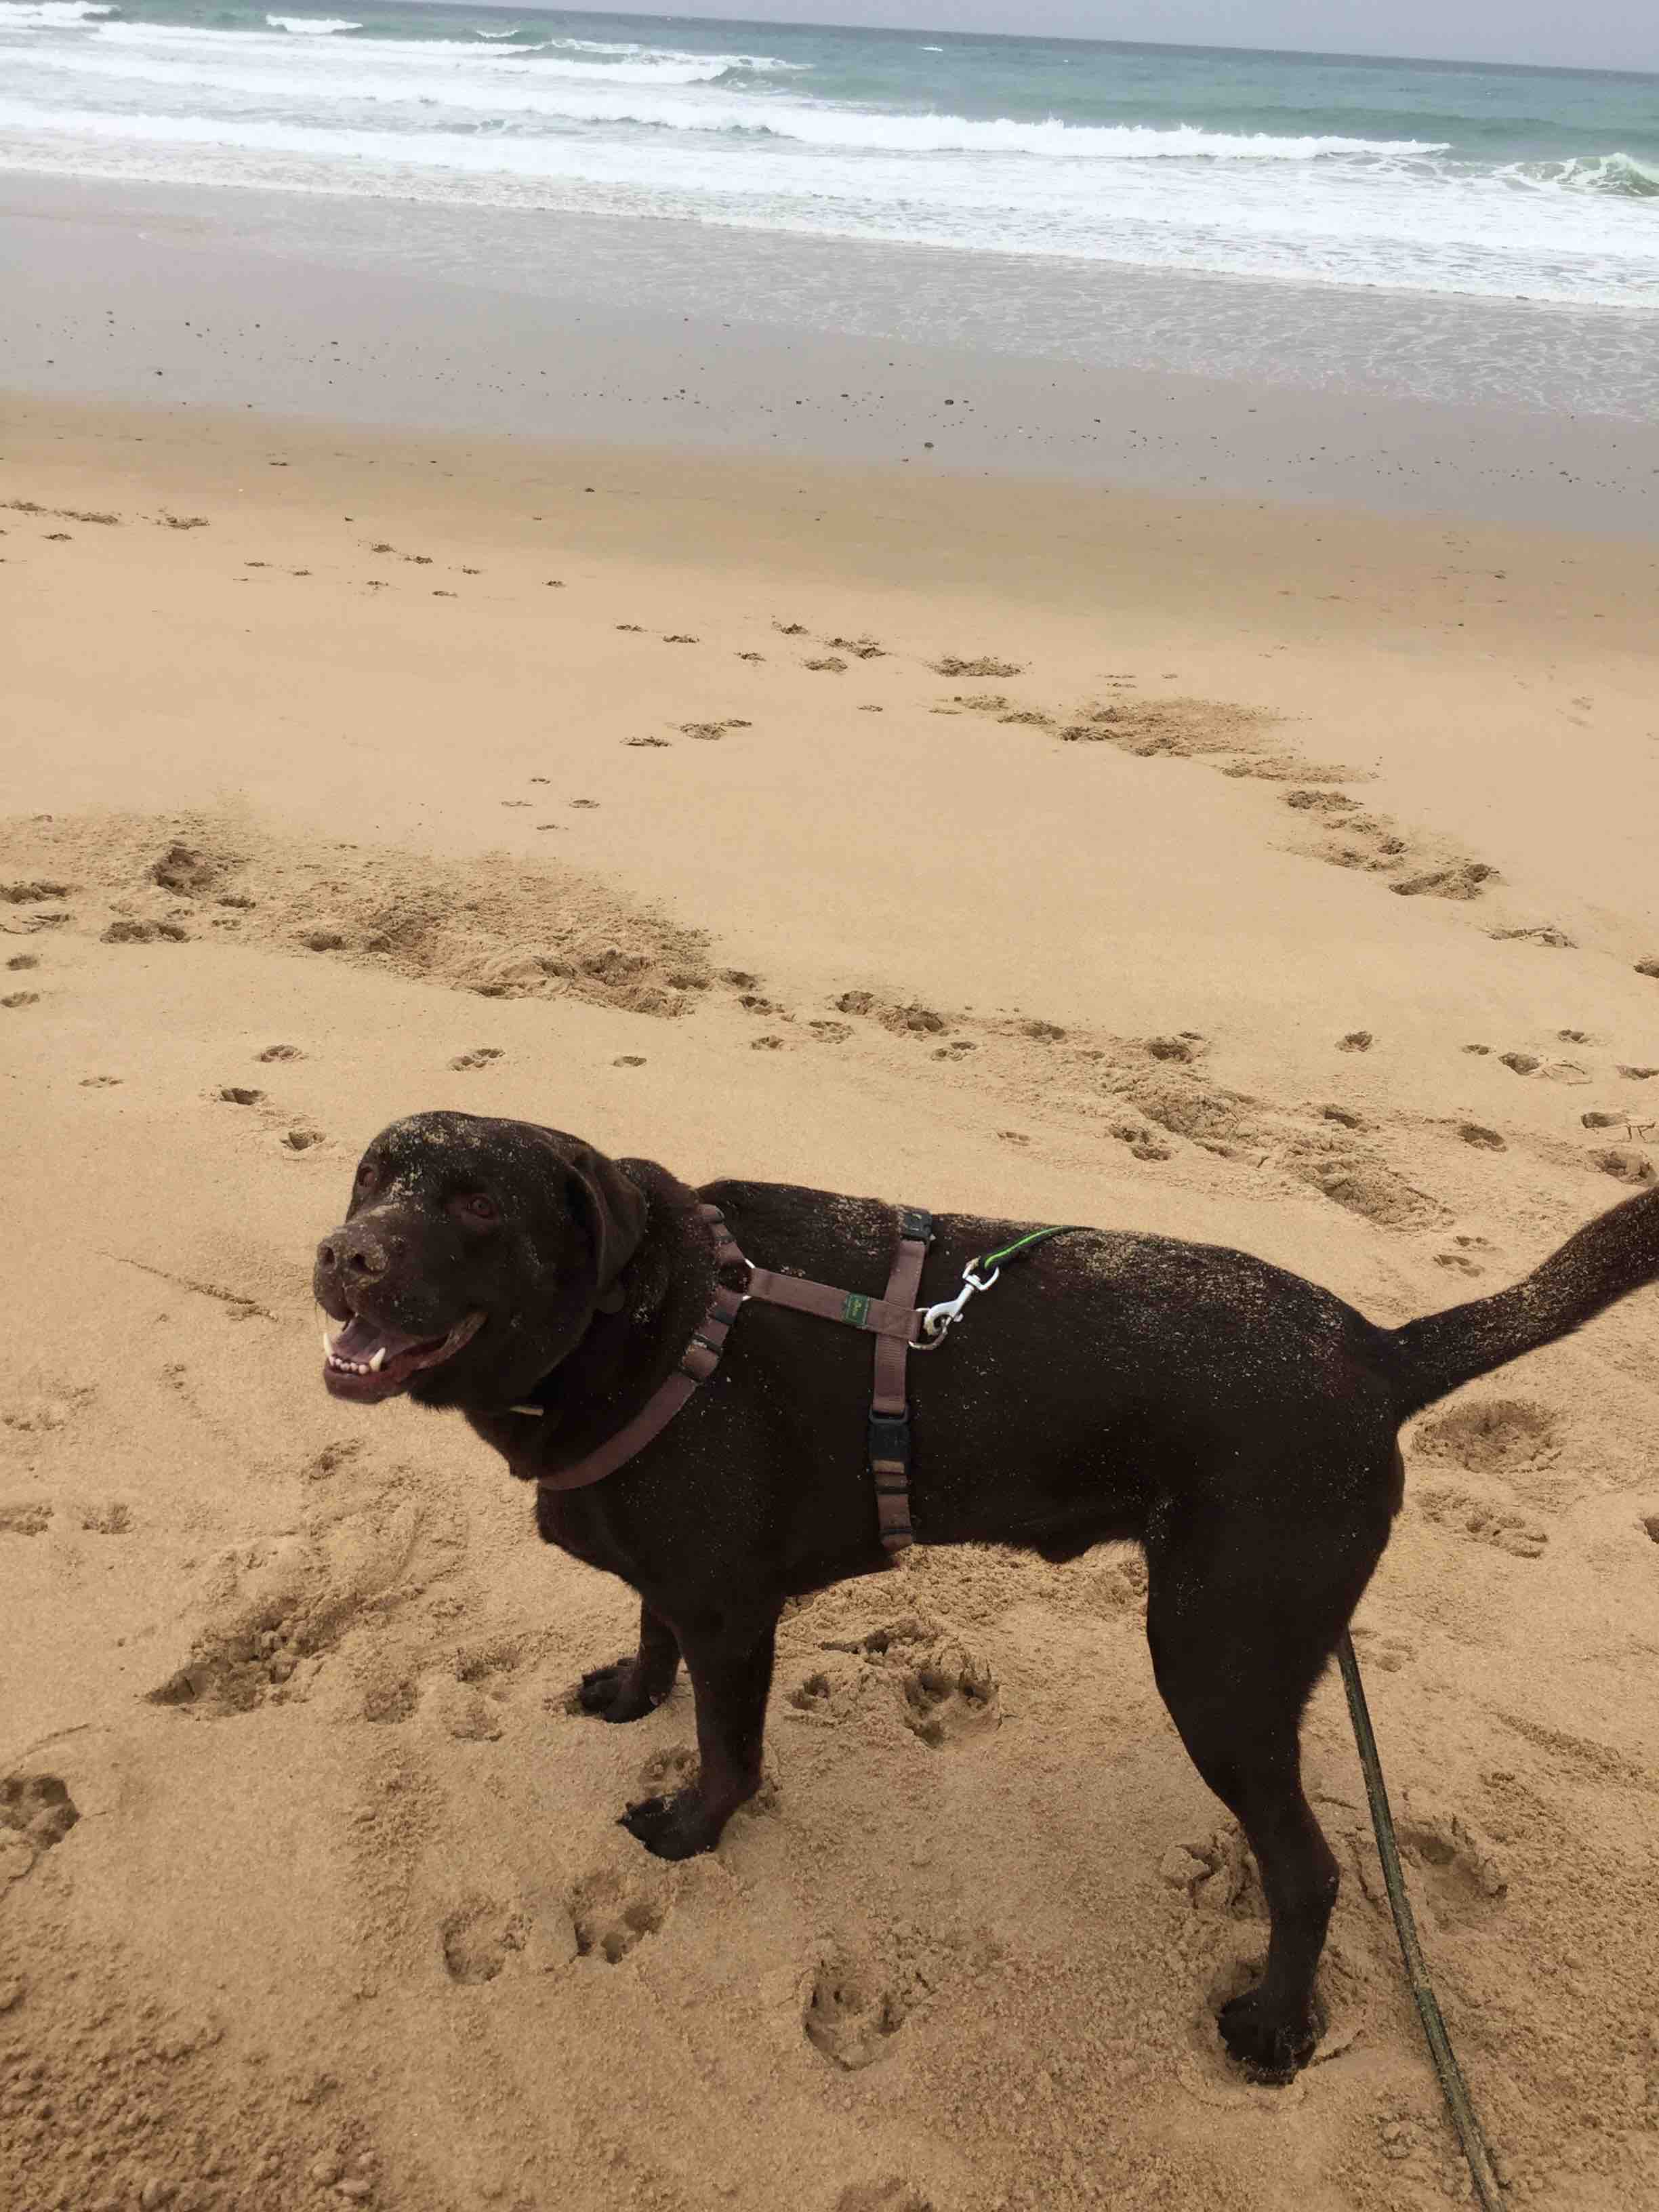 Nach dem Bad im Meer folgt ganz glücklich das Bad im Sand. Hund glücklich, seine Menschen happy.